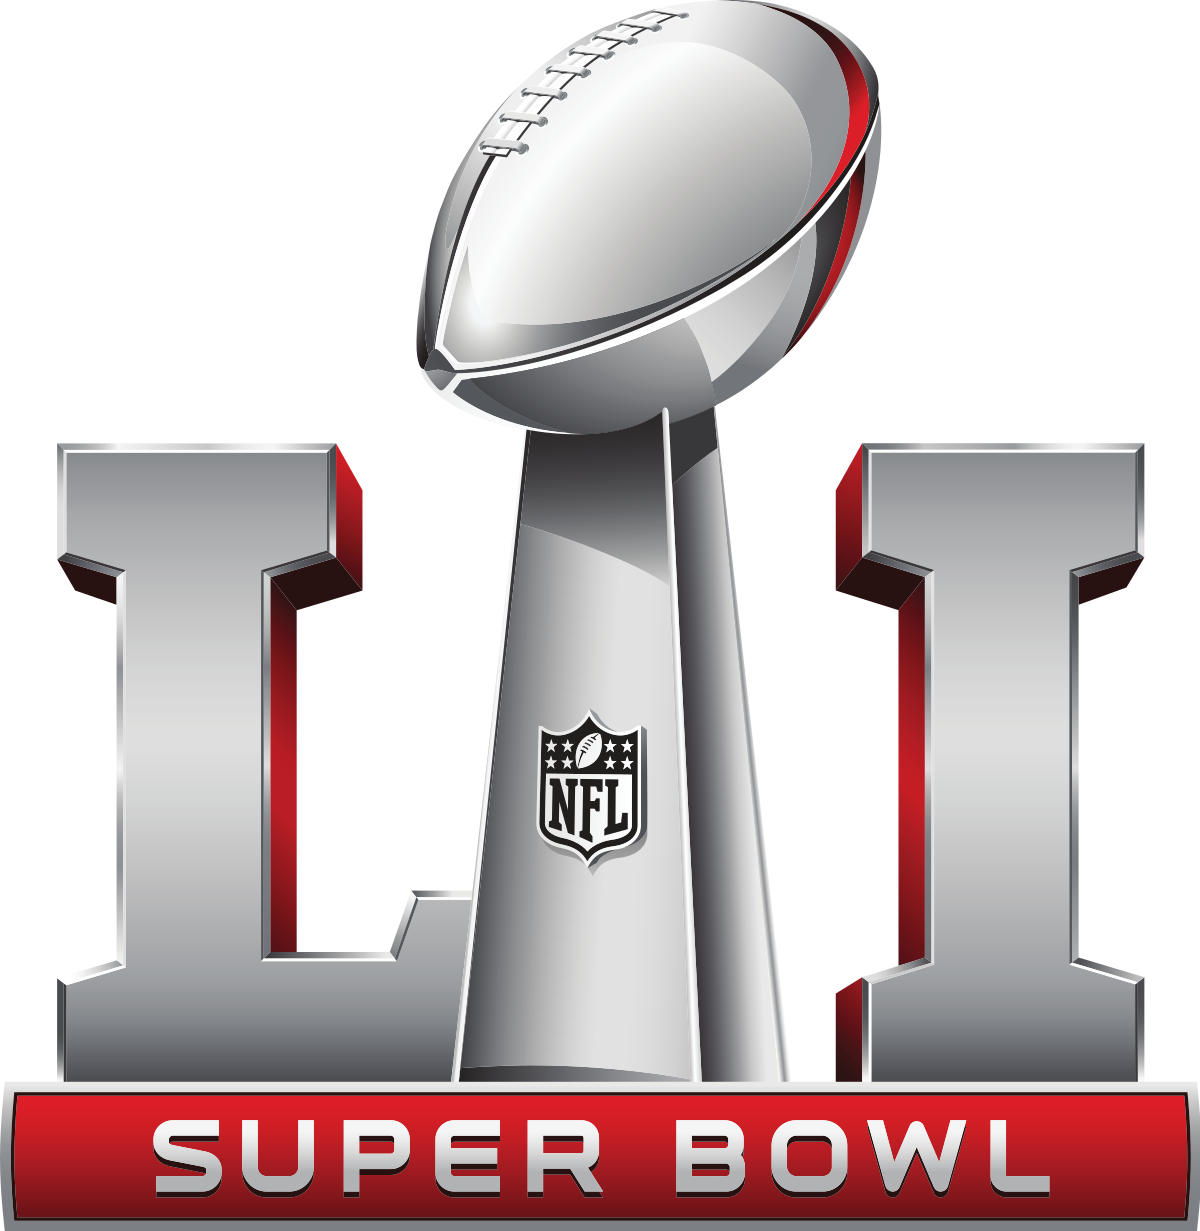 Ambiguous seriously reap Super Bowl LI - Wikipedia